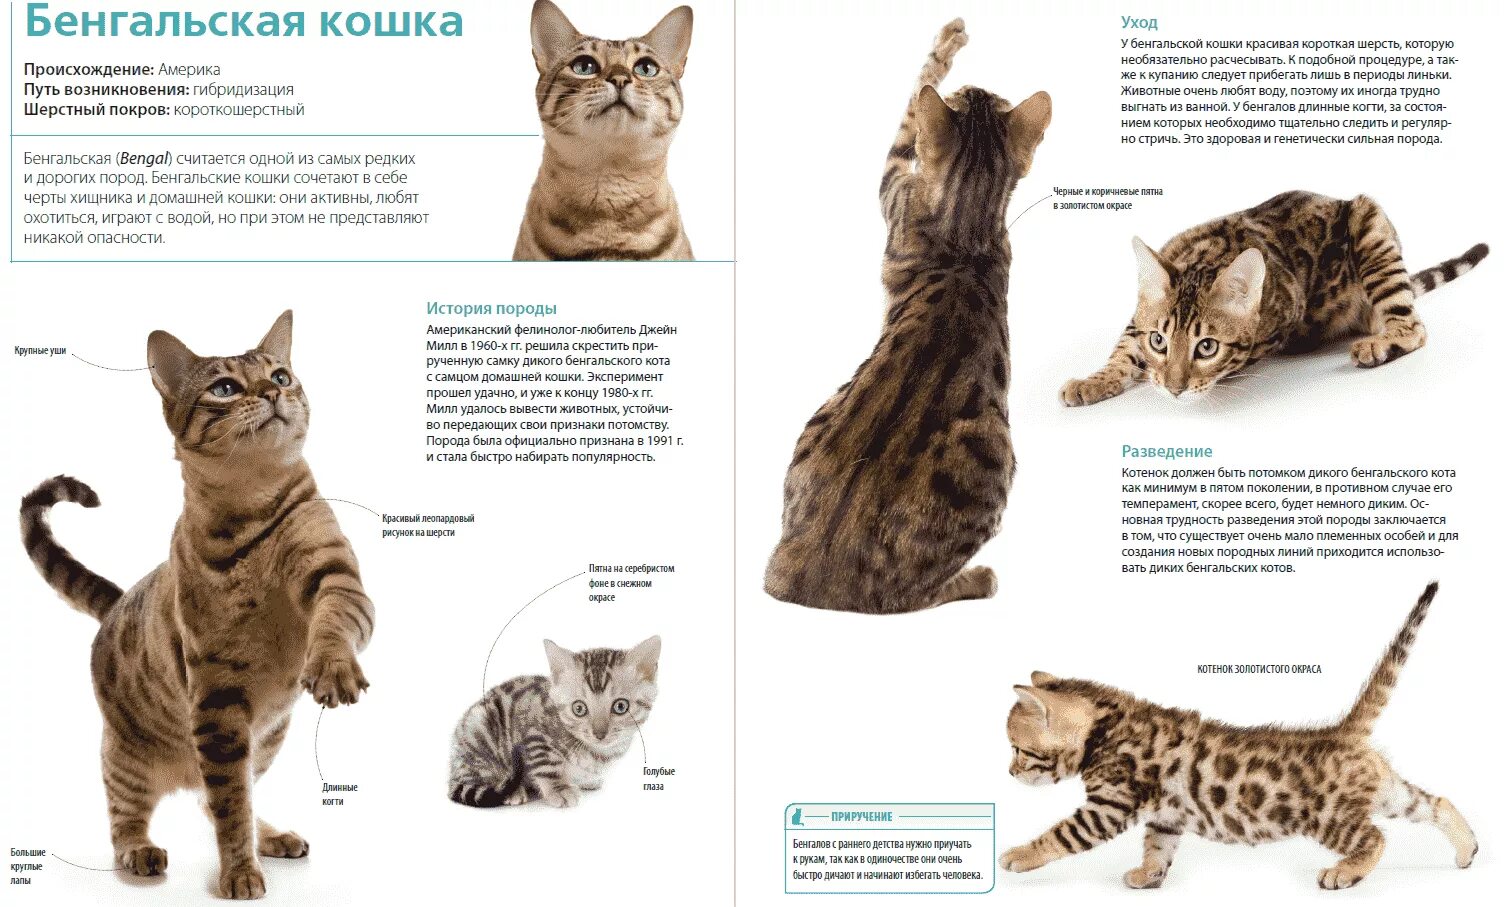 Бенгальская кошка стандарты породы. Бенгальские коты вес по месяцам. Бенгальская кошка описание породы и характера. Кошка породы бенгал характеристика. Рассмотрите фотографию кошки породы